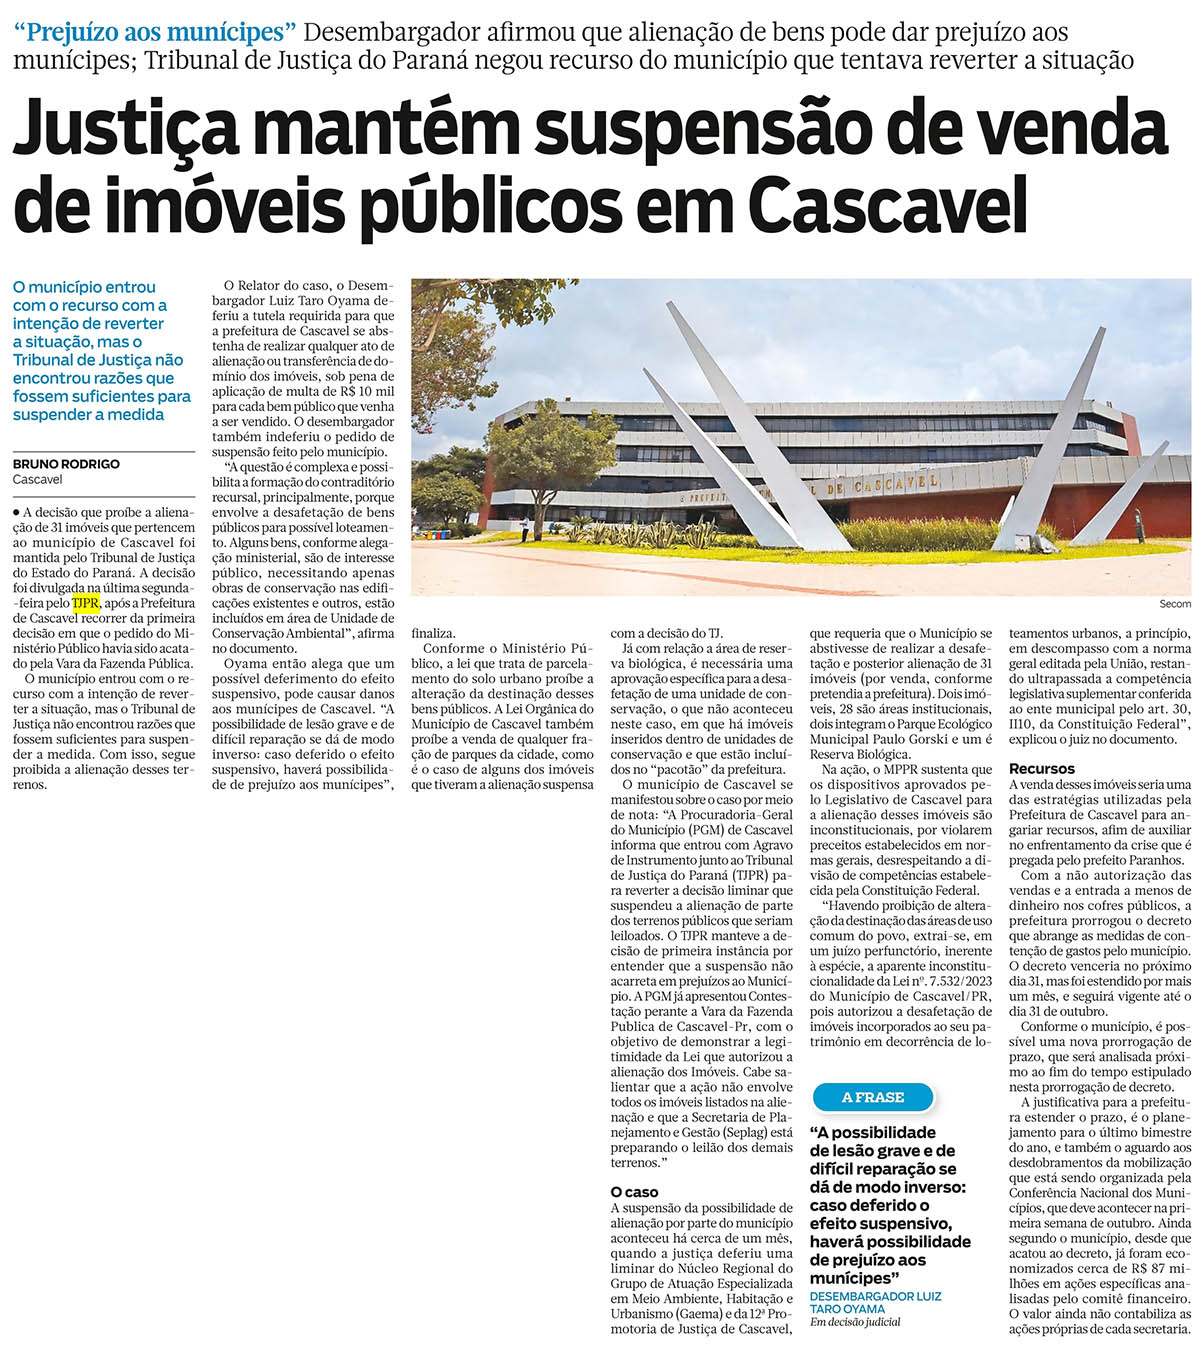 Justiça mantém suspensão de venda de imóveis públicos em Cascavel - image 1